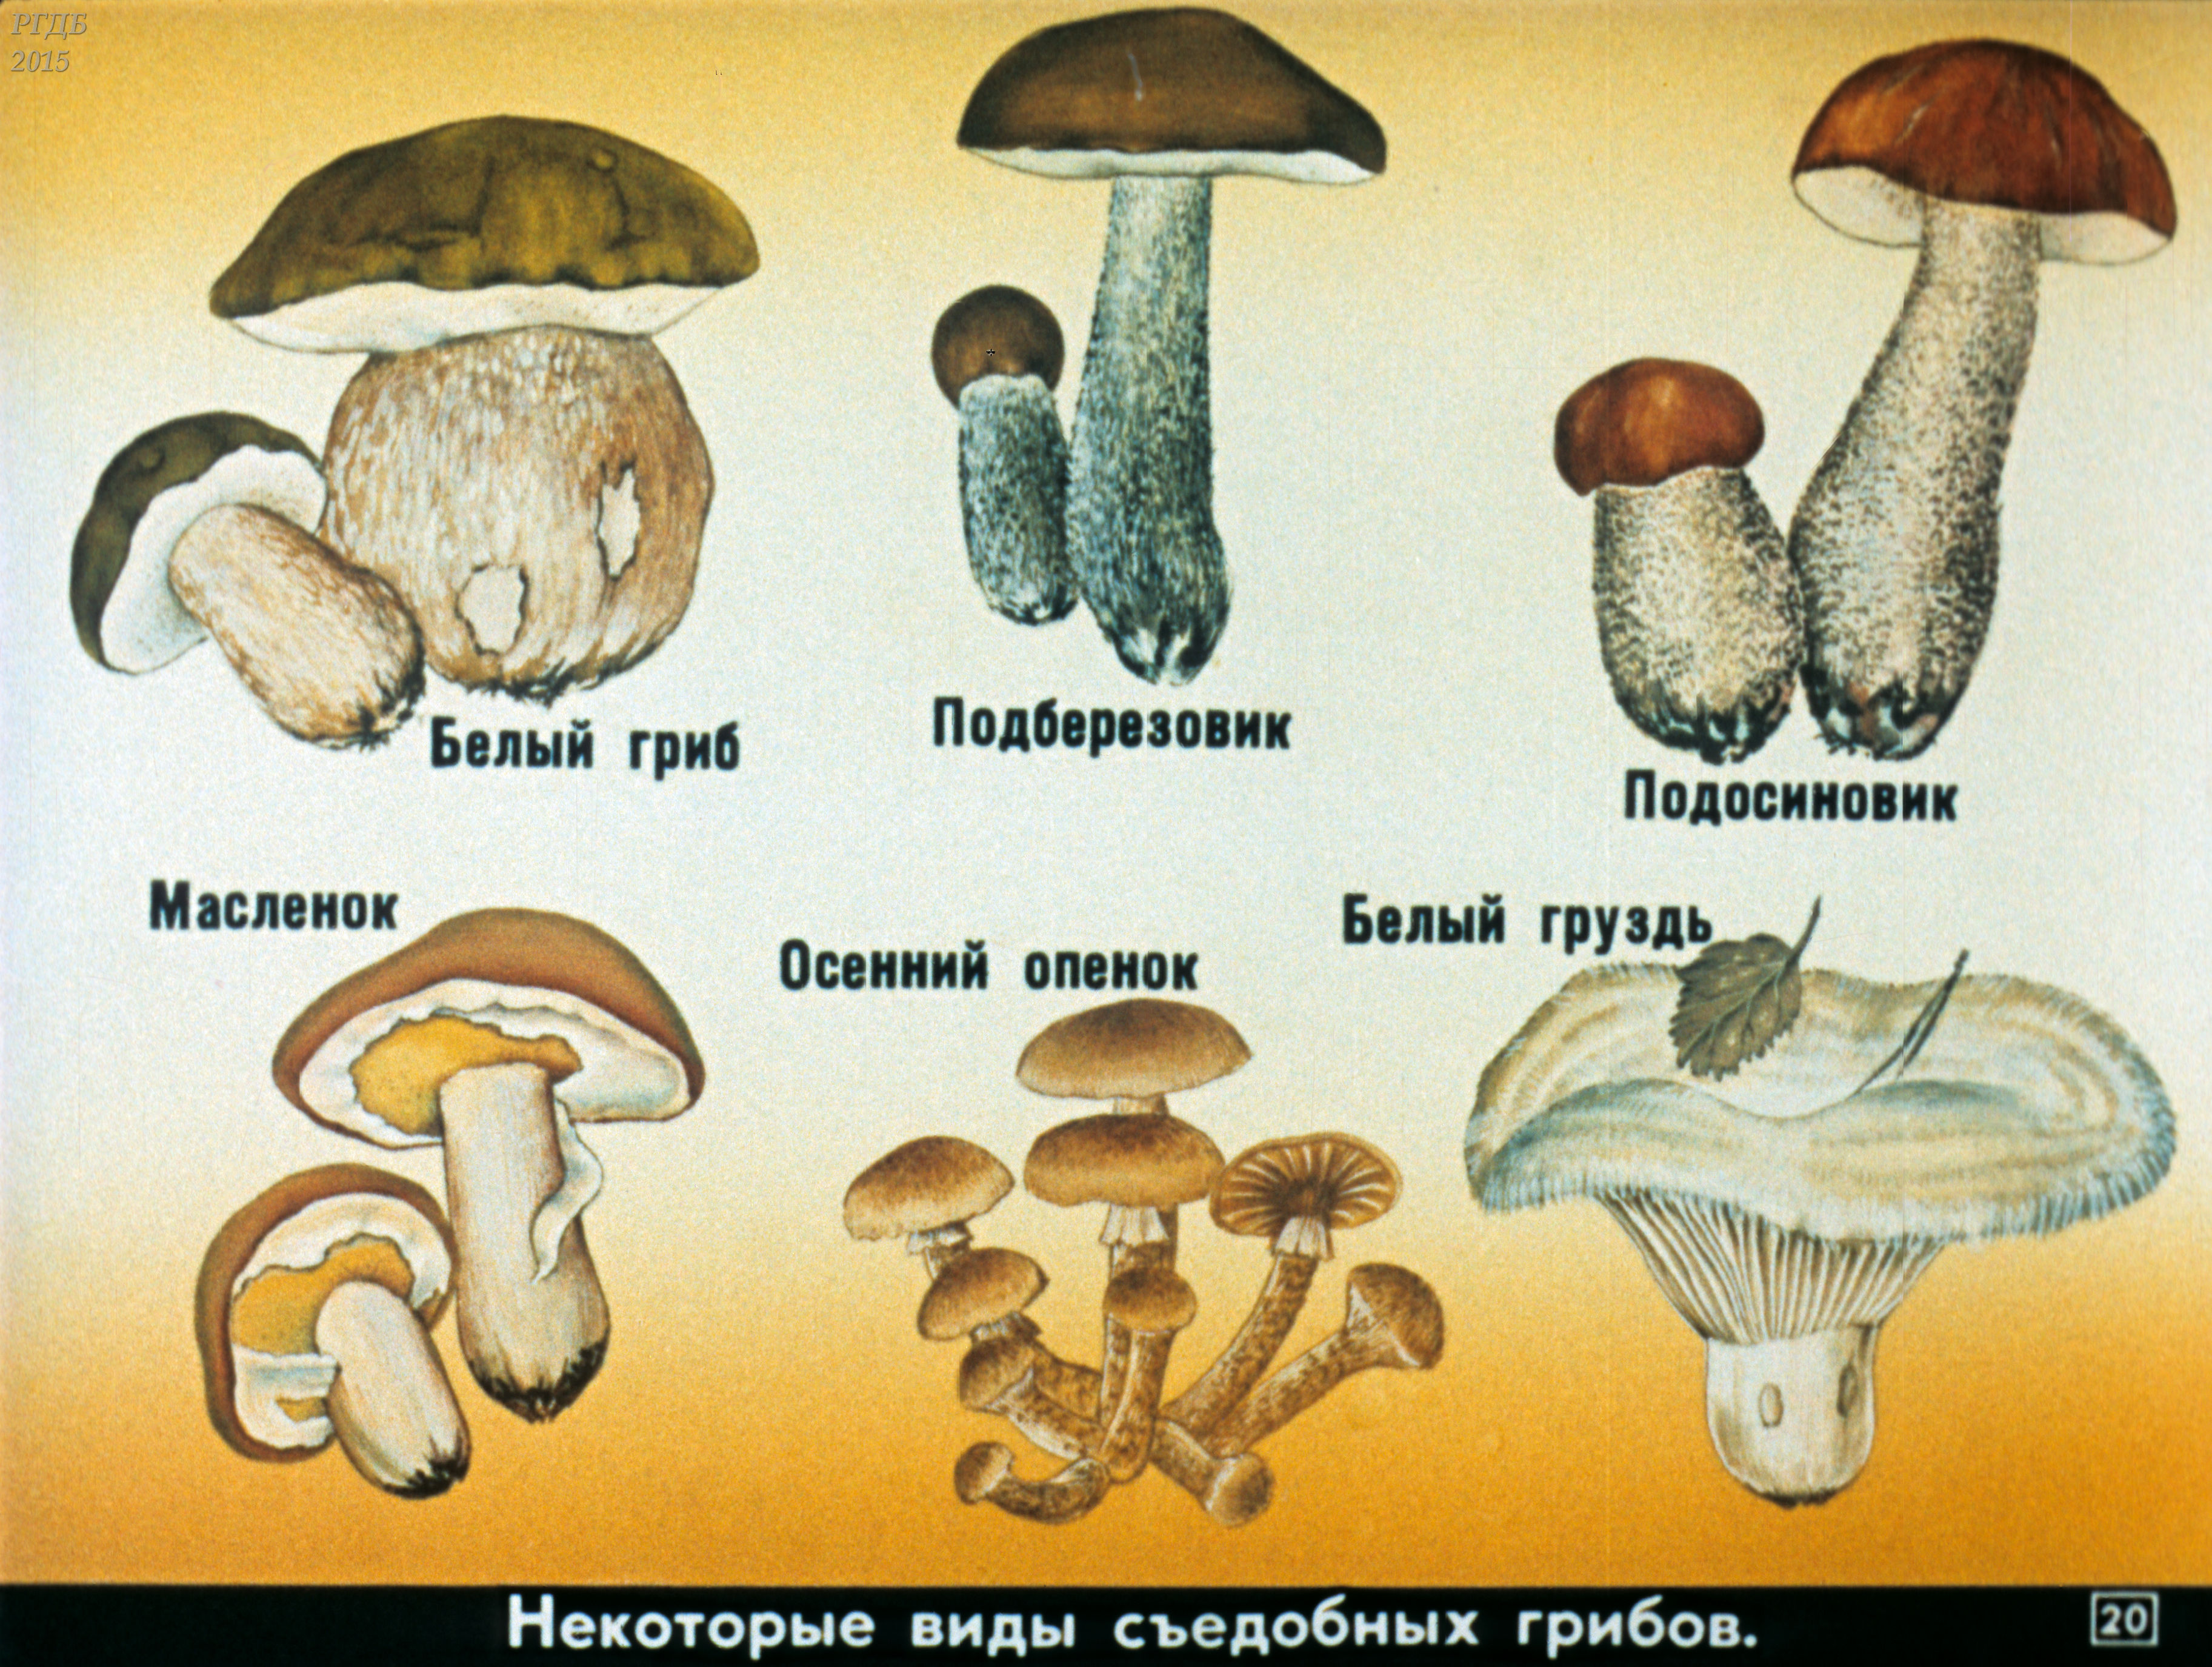 Название некоторых грибов. Название грибов. Съедобные грибы. Виды съедобных грибов. Картинки грибов с названиями.